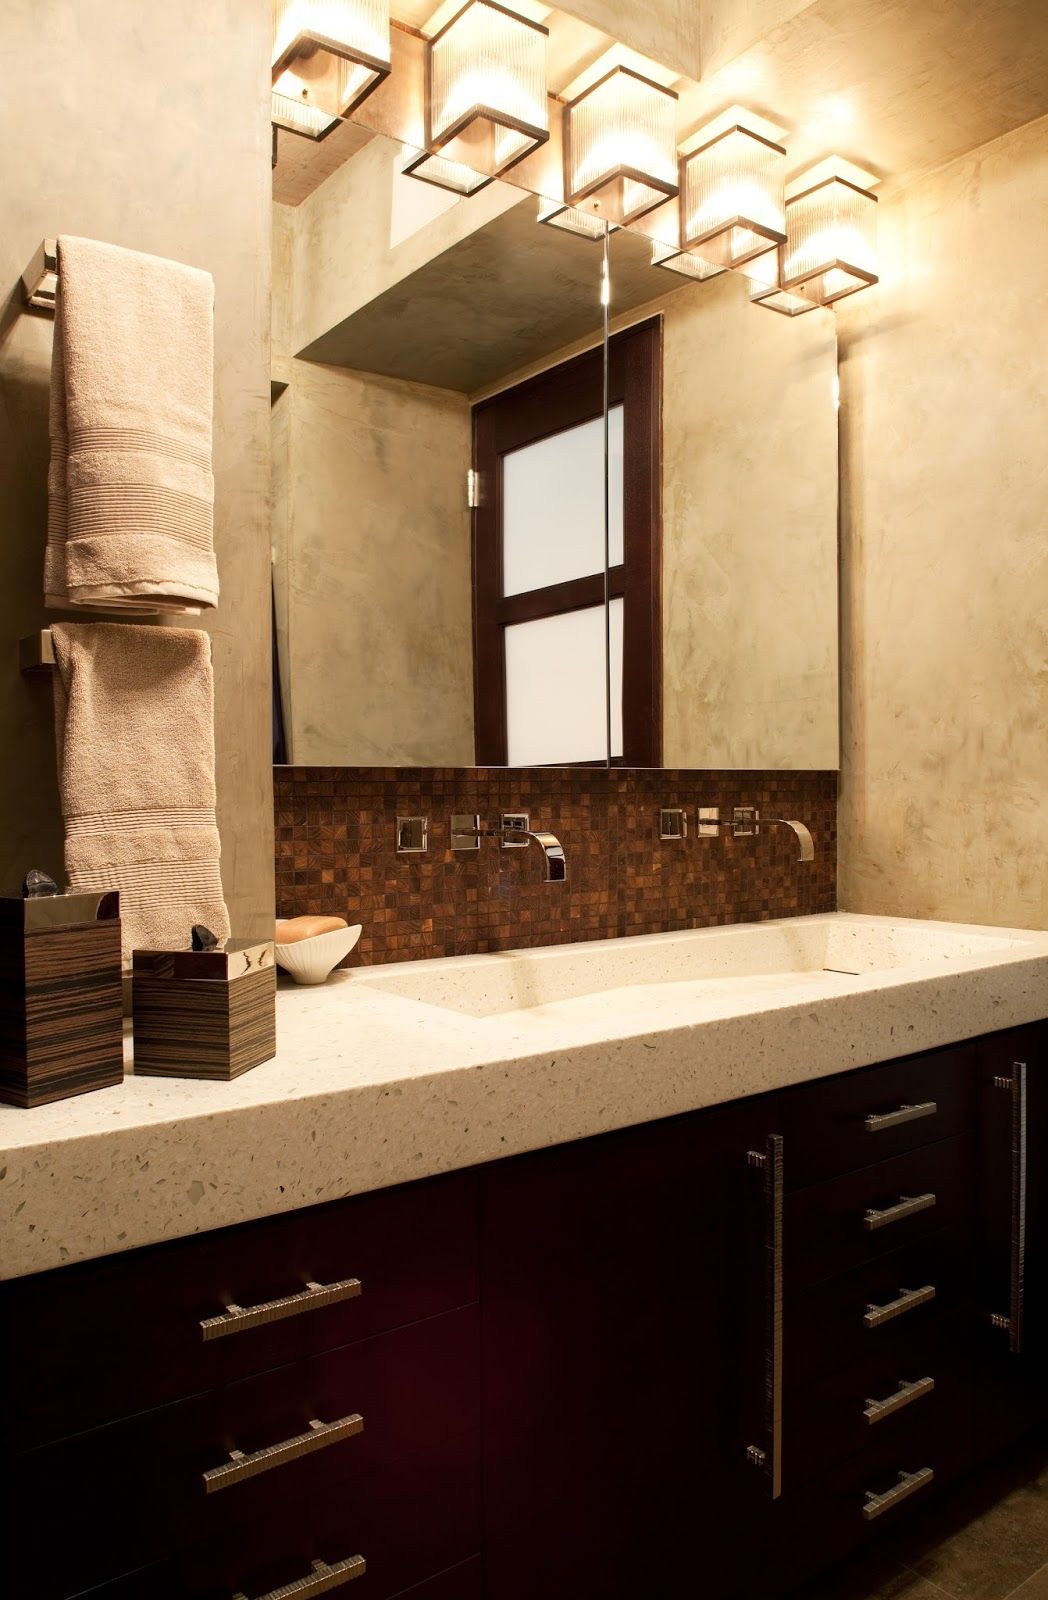 Chandelier Bathroom Vanity Lighting Interiordesignew With Regard To Chandelier Bathroom Lighting (View 20 of 25)